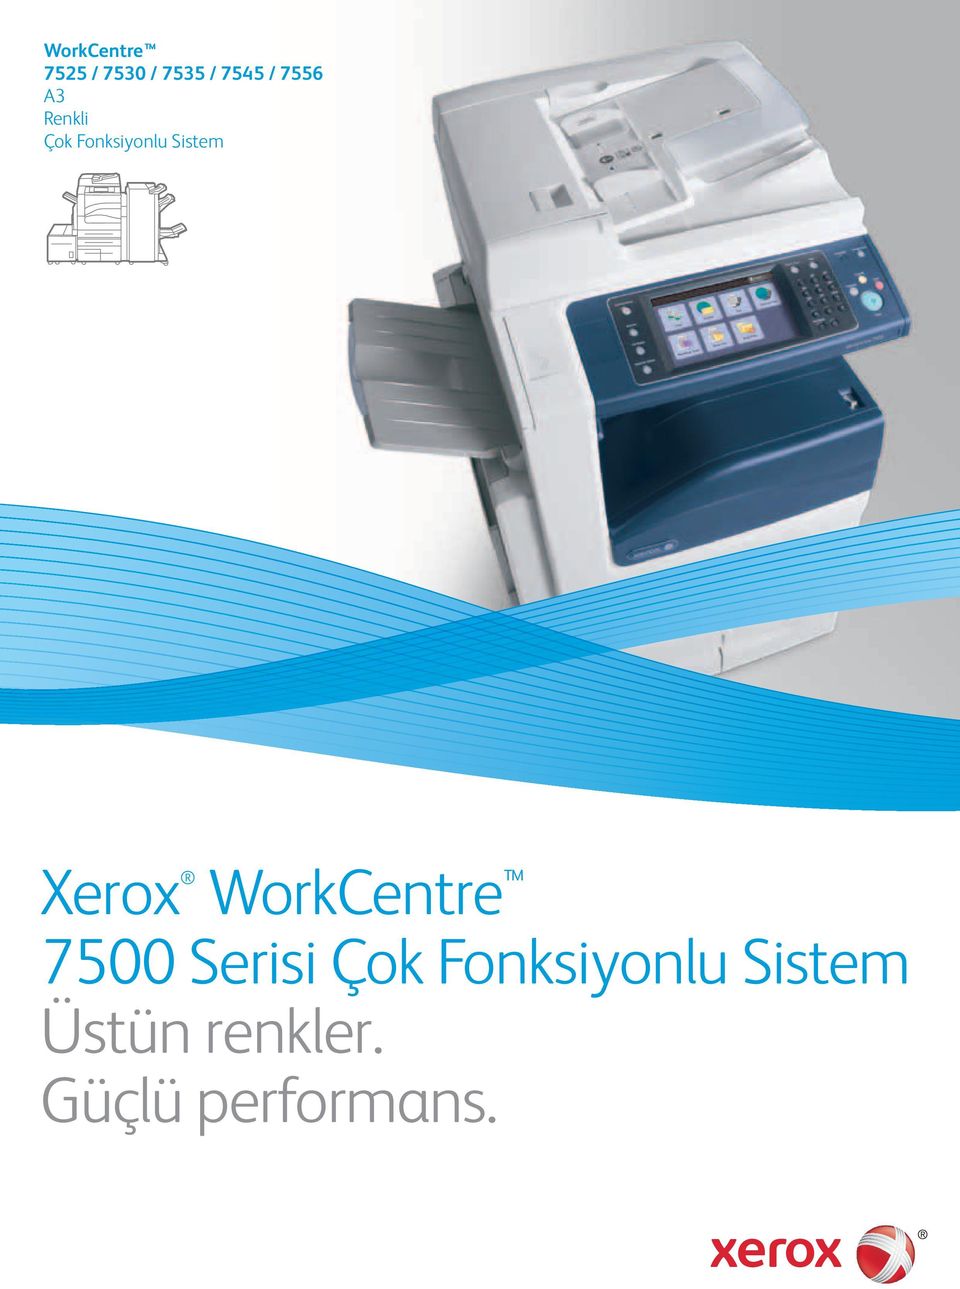 Xerox WorkCentre 7500 Serisi Çok